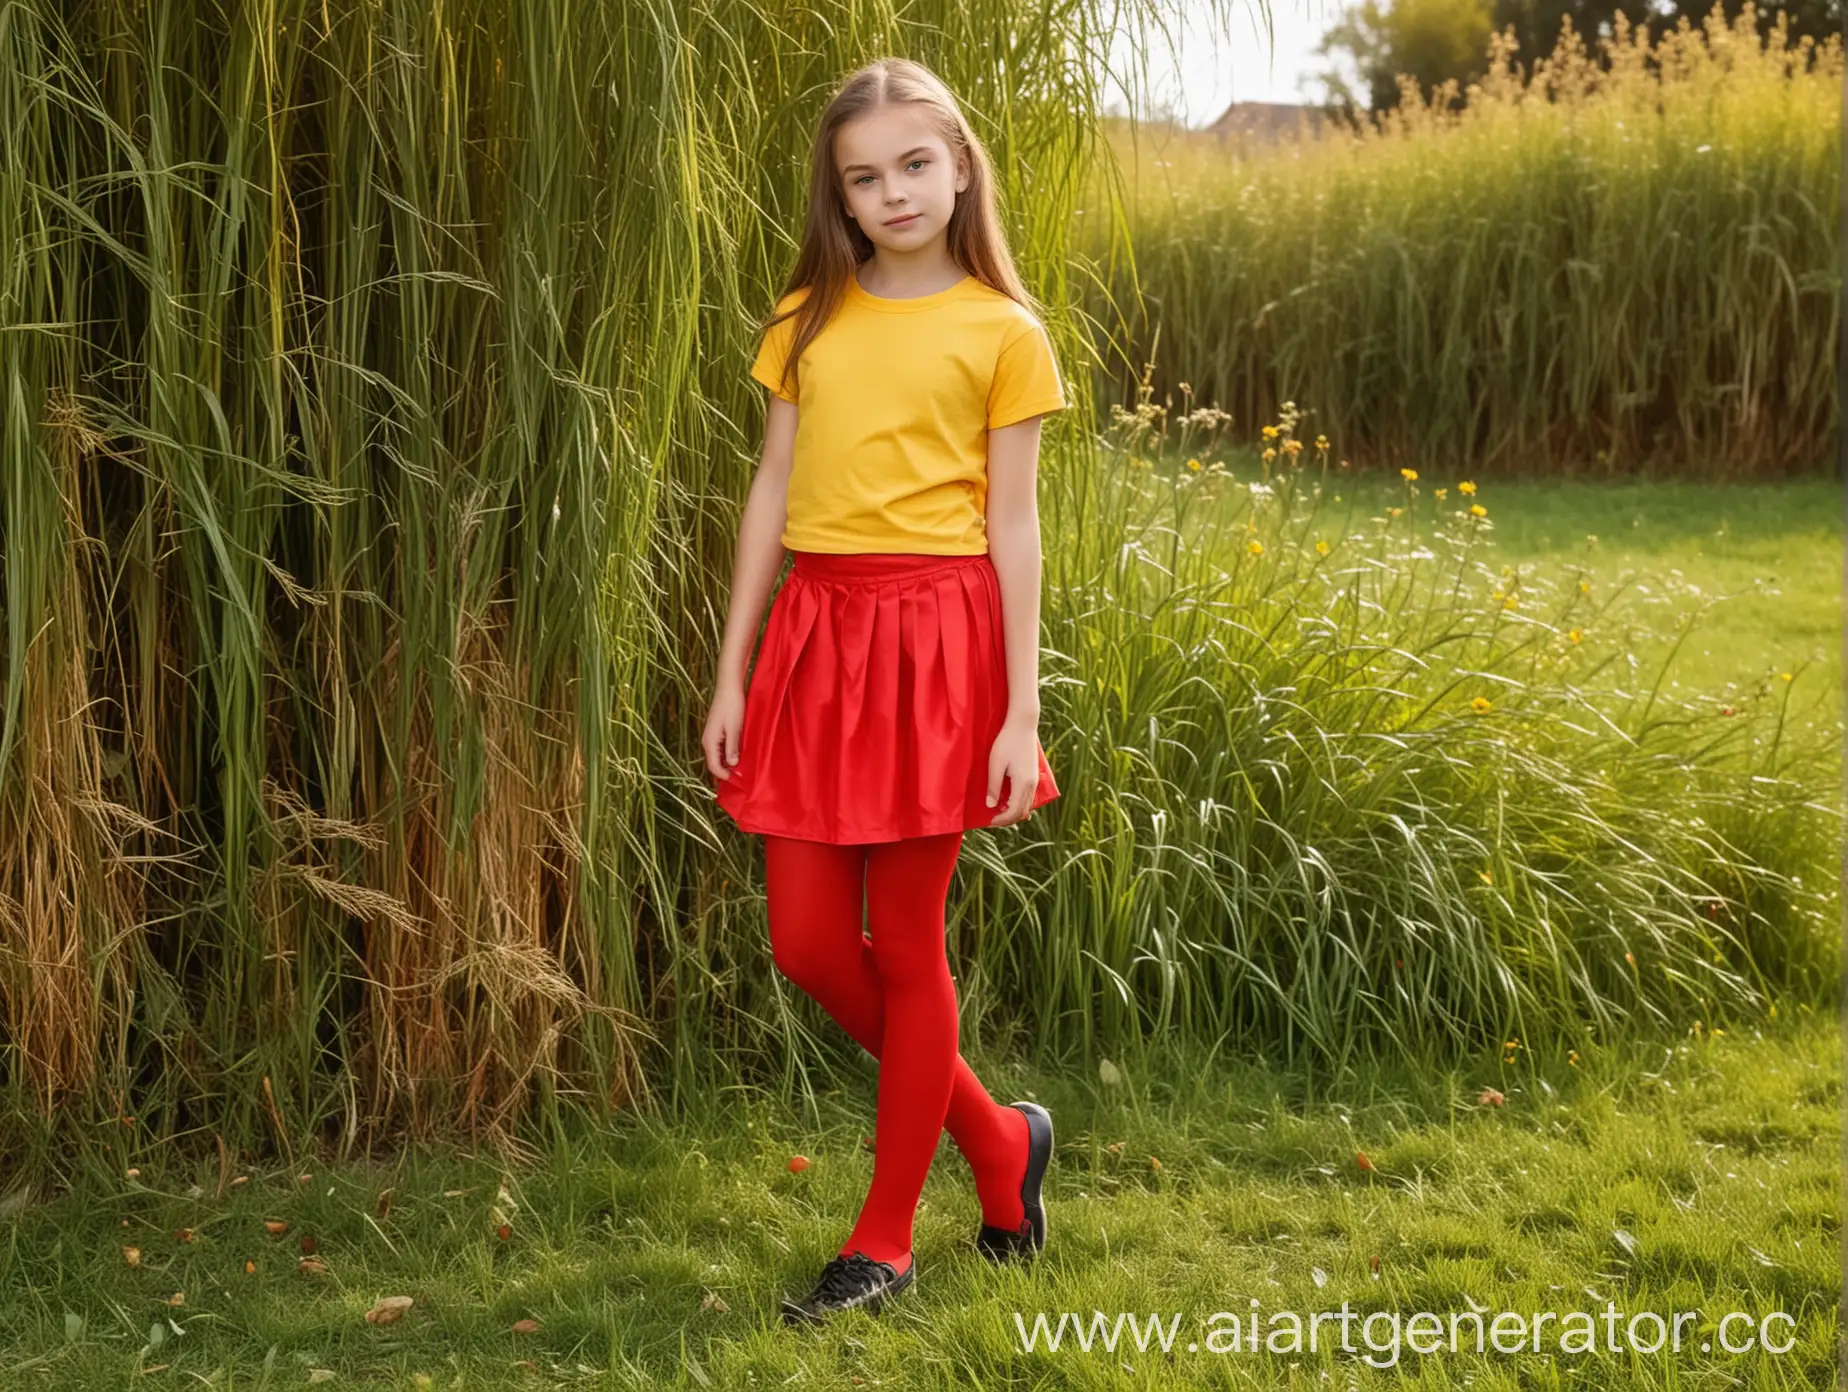 TwelveYearOld-Girl-in-Red-Midi-Skirt-and-Yellow-TShirt-Near-Grass